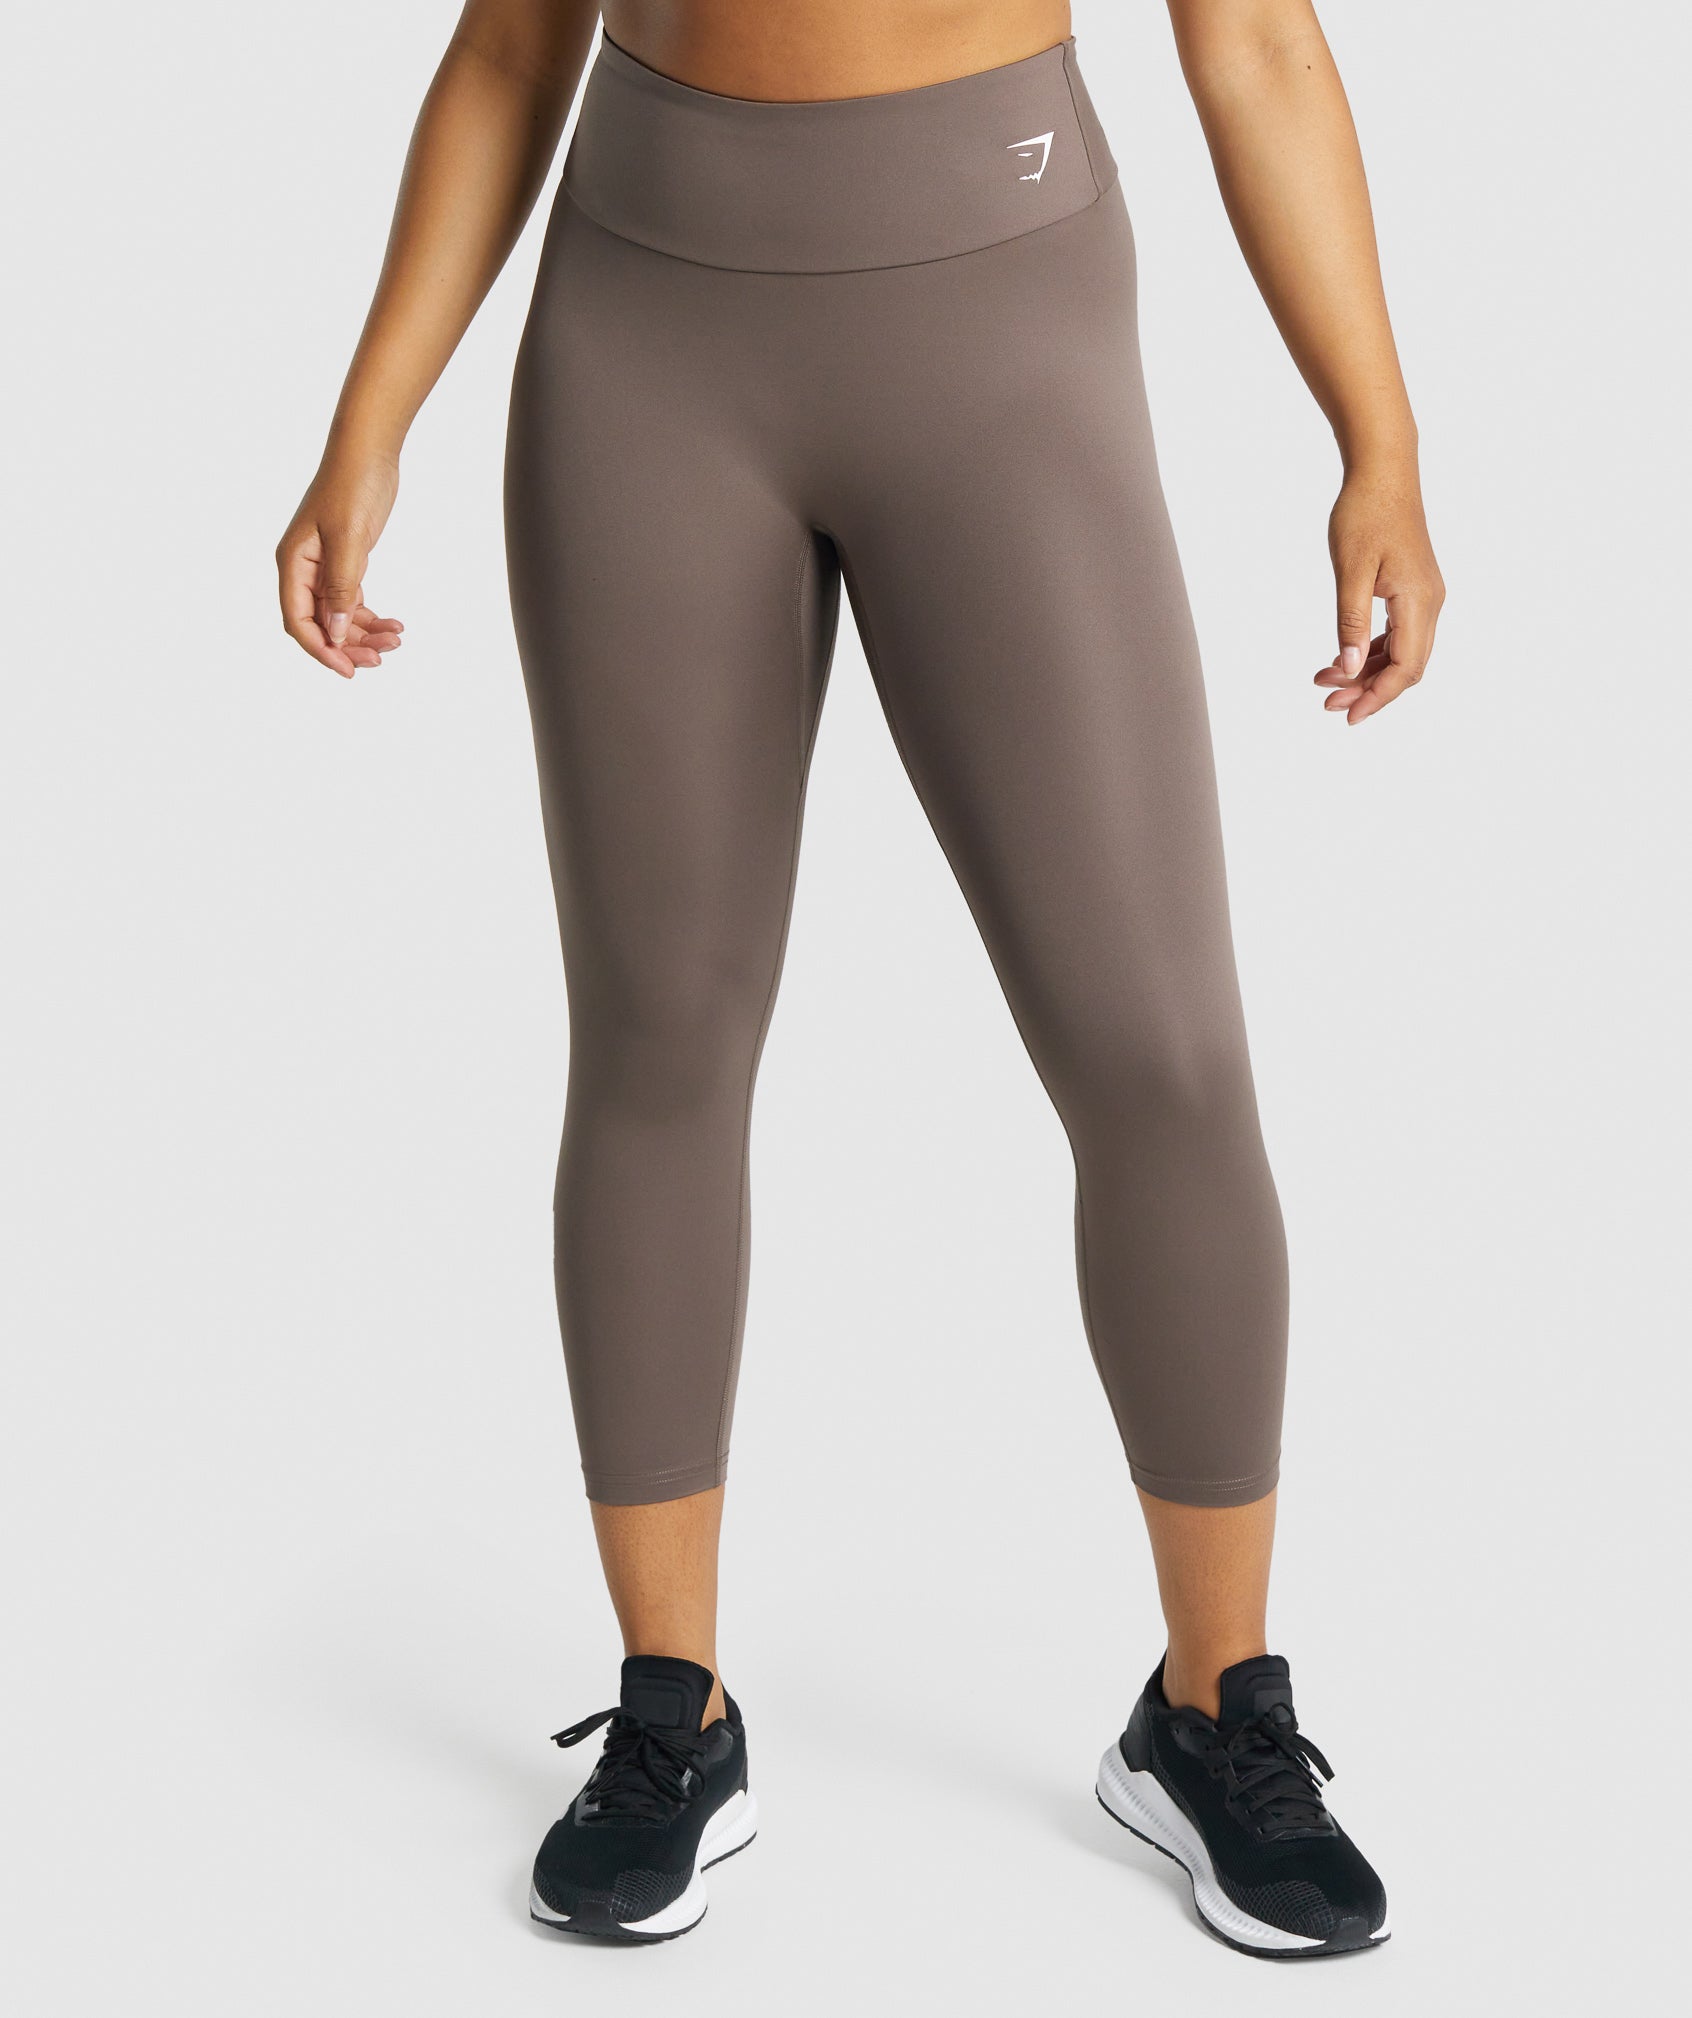 Gymshark leggings- medium  Clothes design, Gymshark leggings